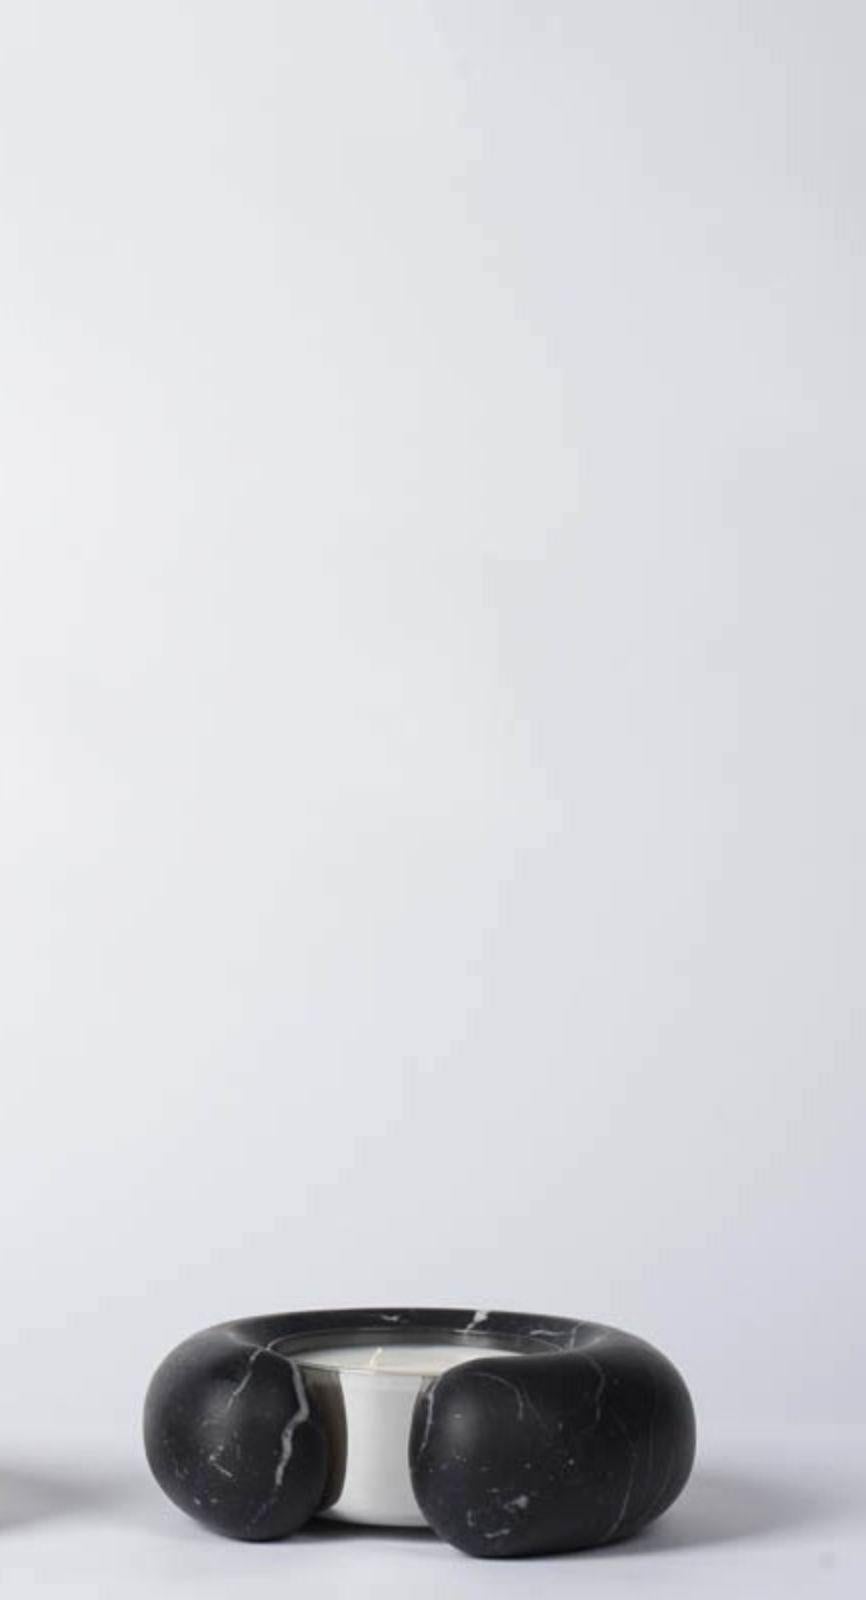 Antila-Kerzenhalter aus Marmor von Dan Yeffet
Abmessungen: Ø 18 x H 6 cm
MATERIALIEN: Marmor 


Geboren 1971 in Jerusalem, Israel. Studium des Industriedesigns an der Bezalel Academy: Schule für Kunst und Design in Jerusalem (1999-2001). Danach zog